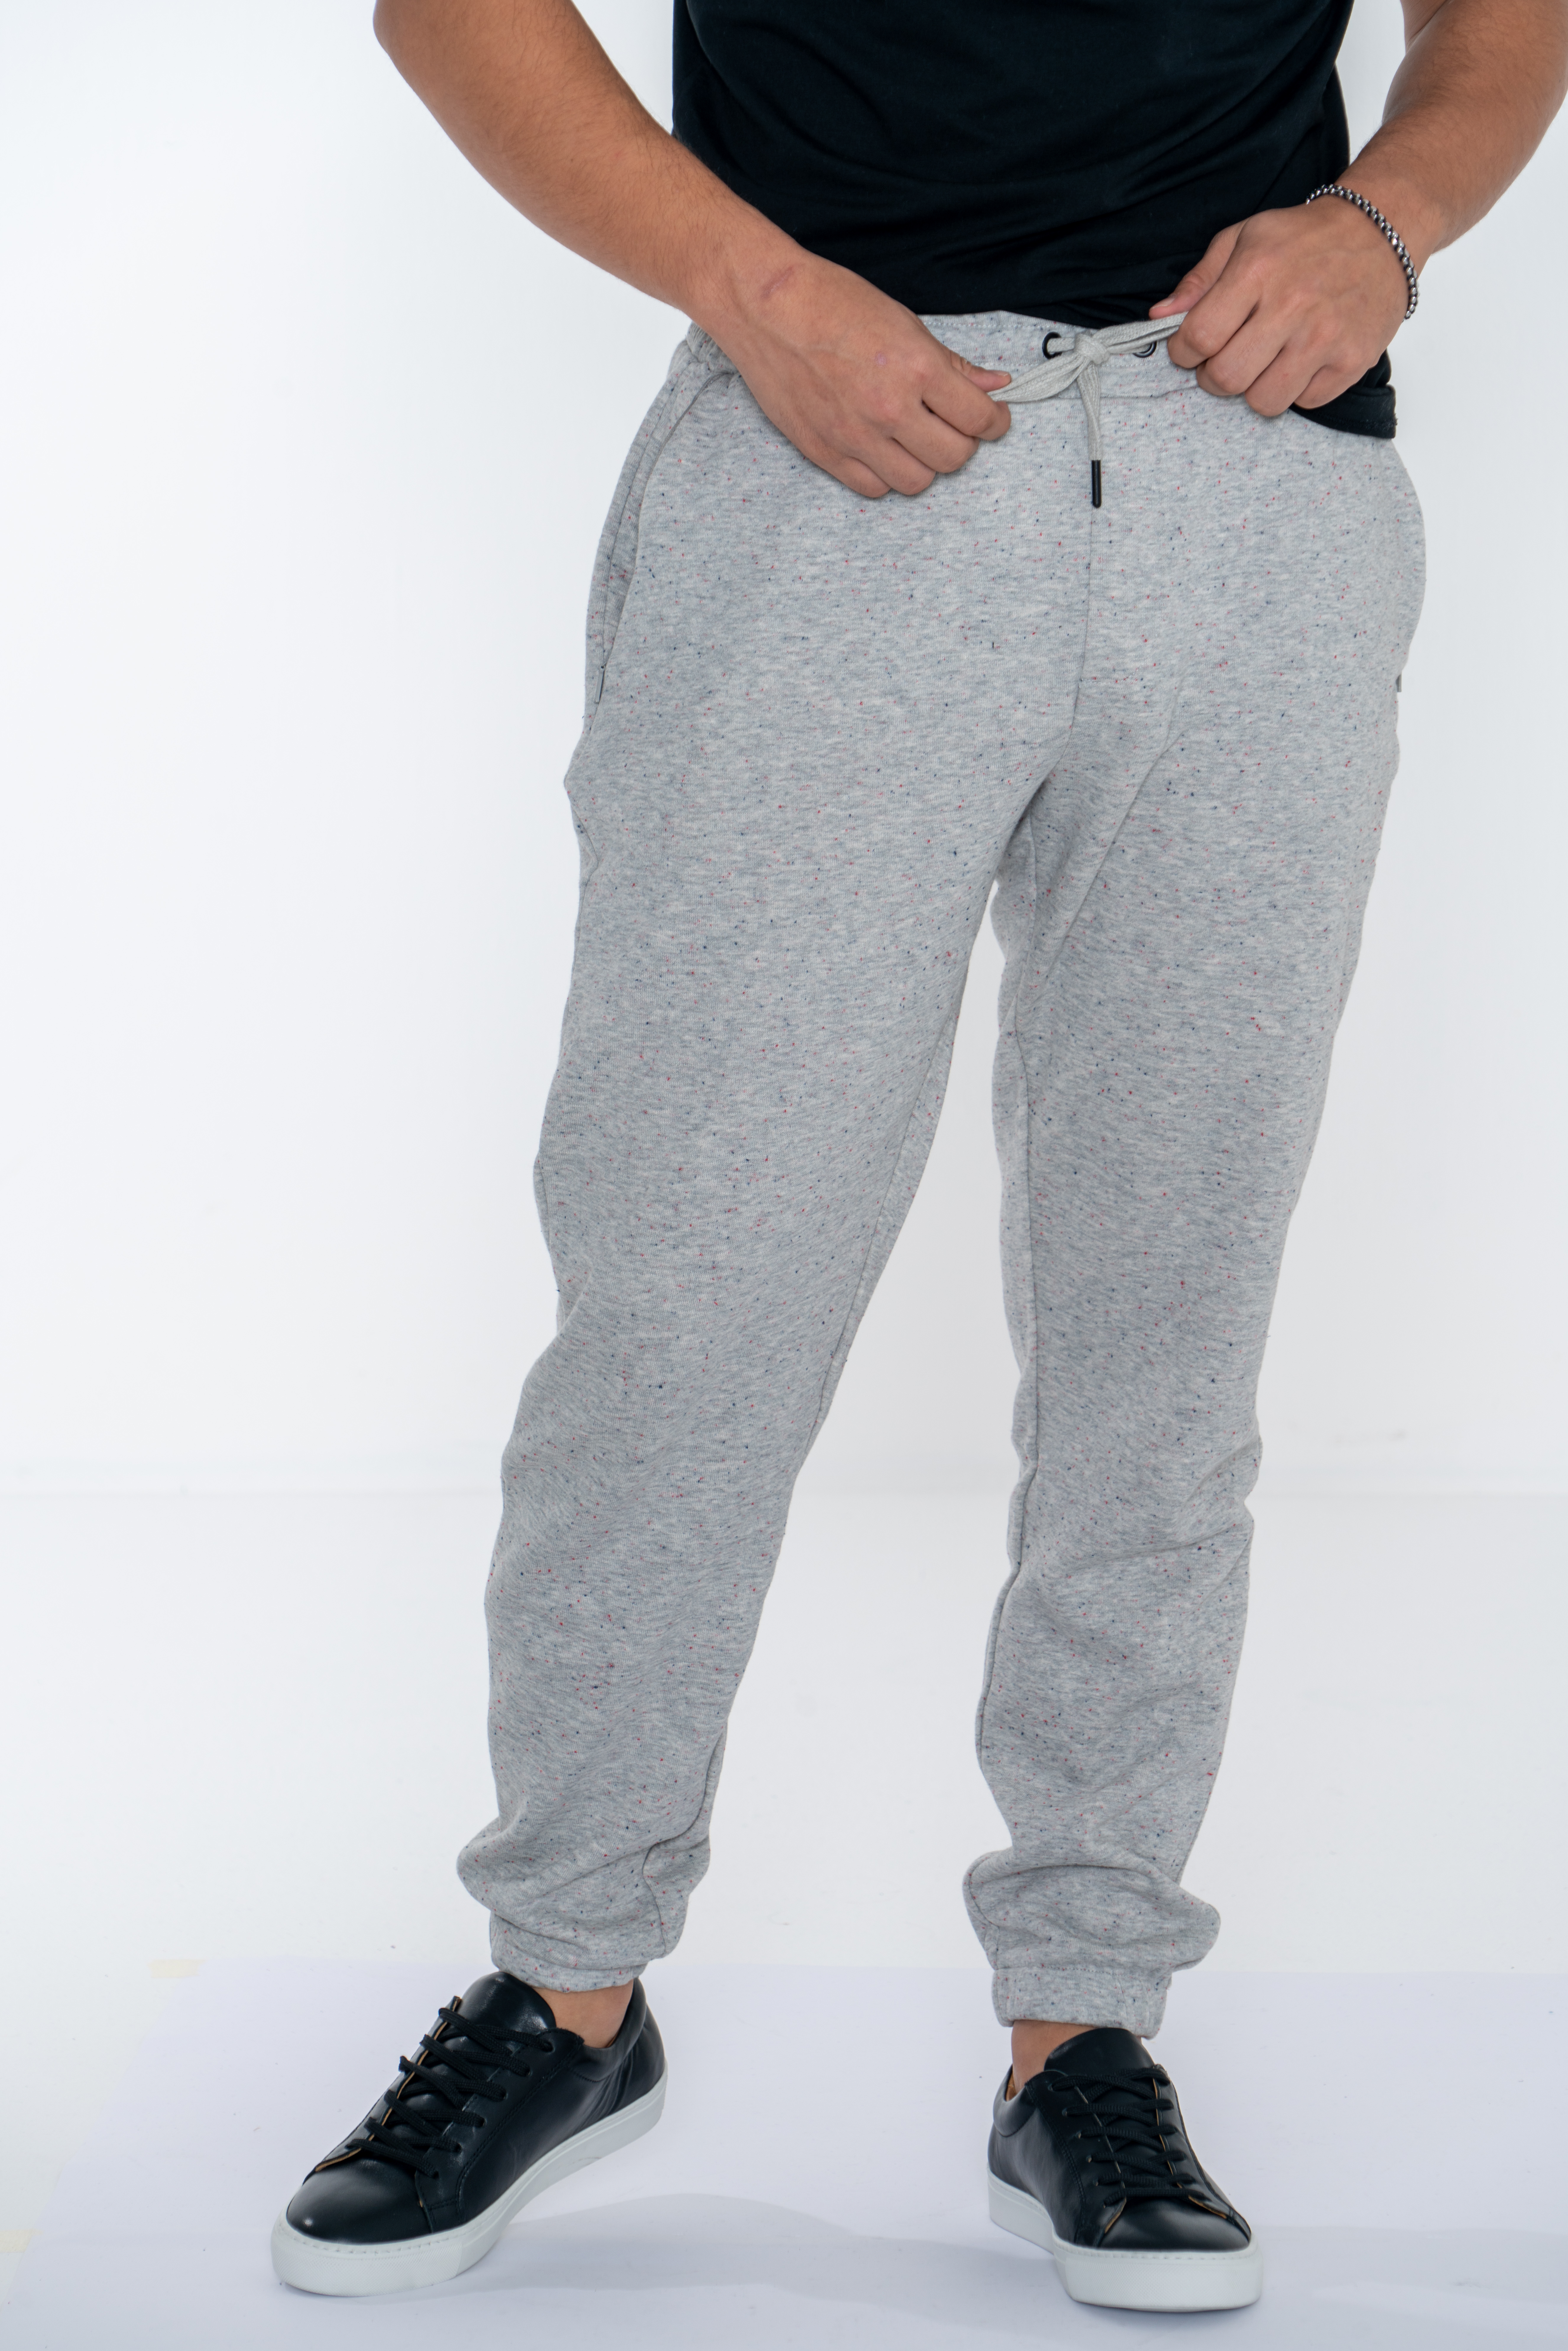 Sportswear Trousers Light Grey Casual Man